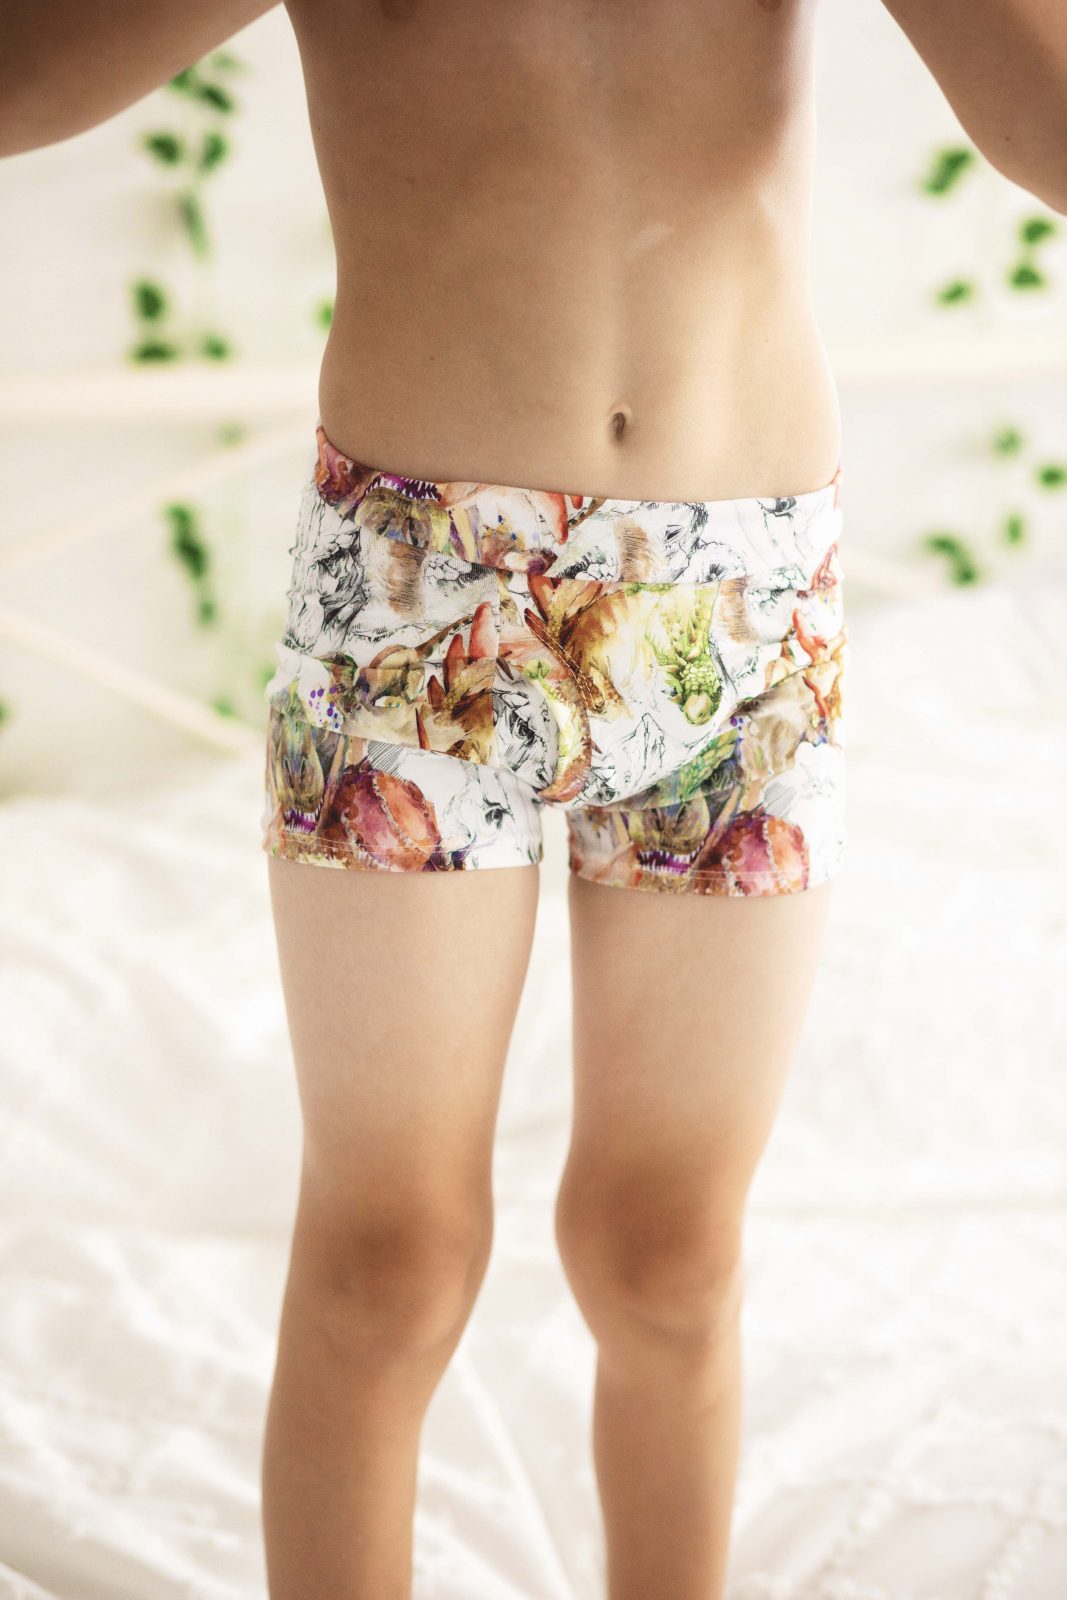 Boy cut brief unisex underwear pattern 2T/3T/4T/5Y/6Y - PDF